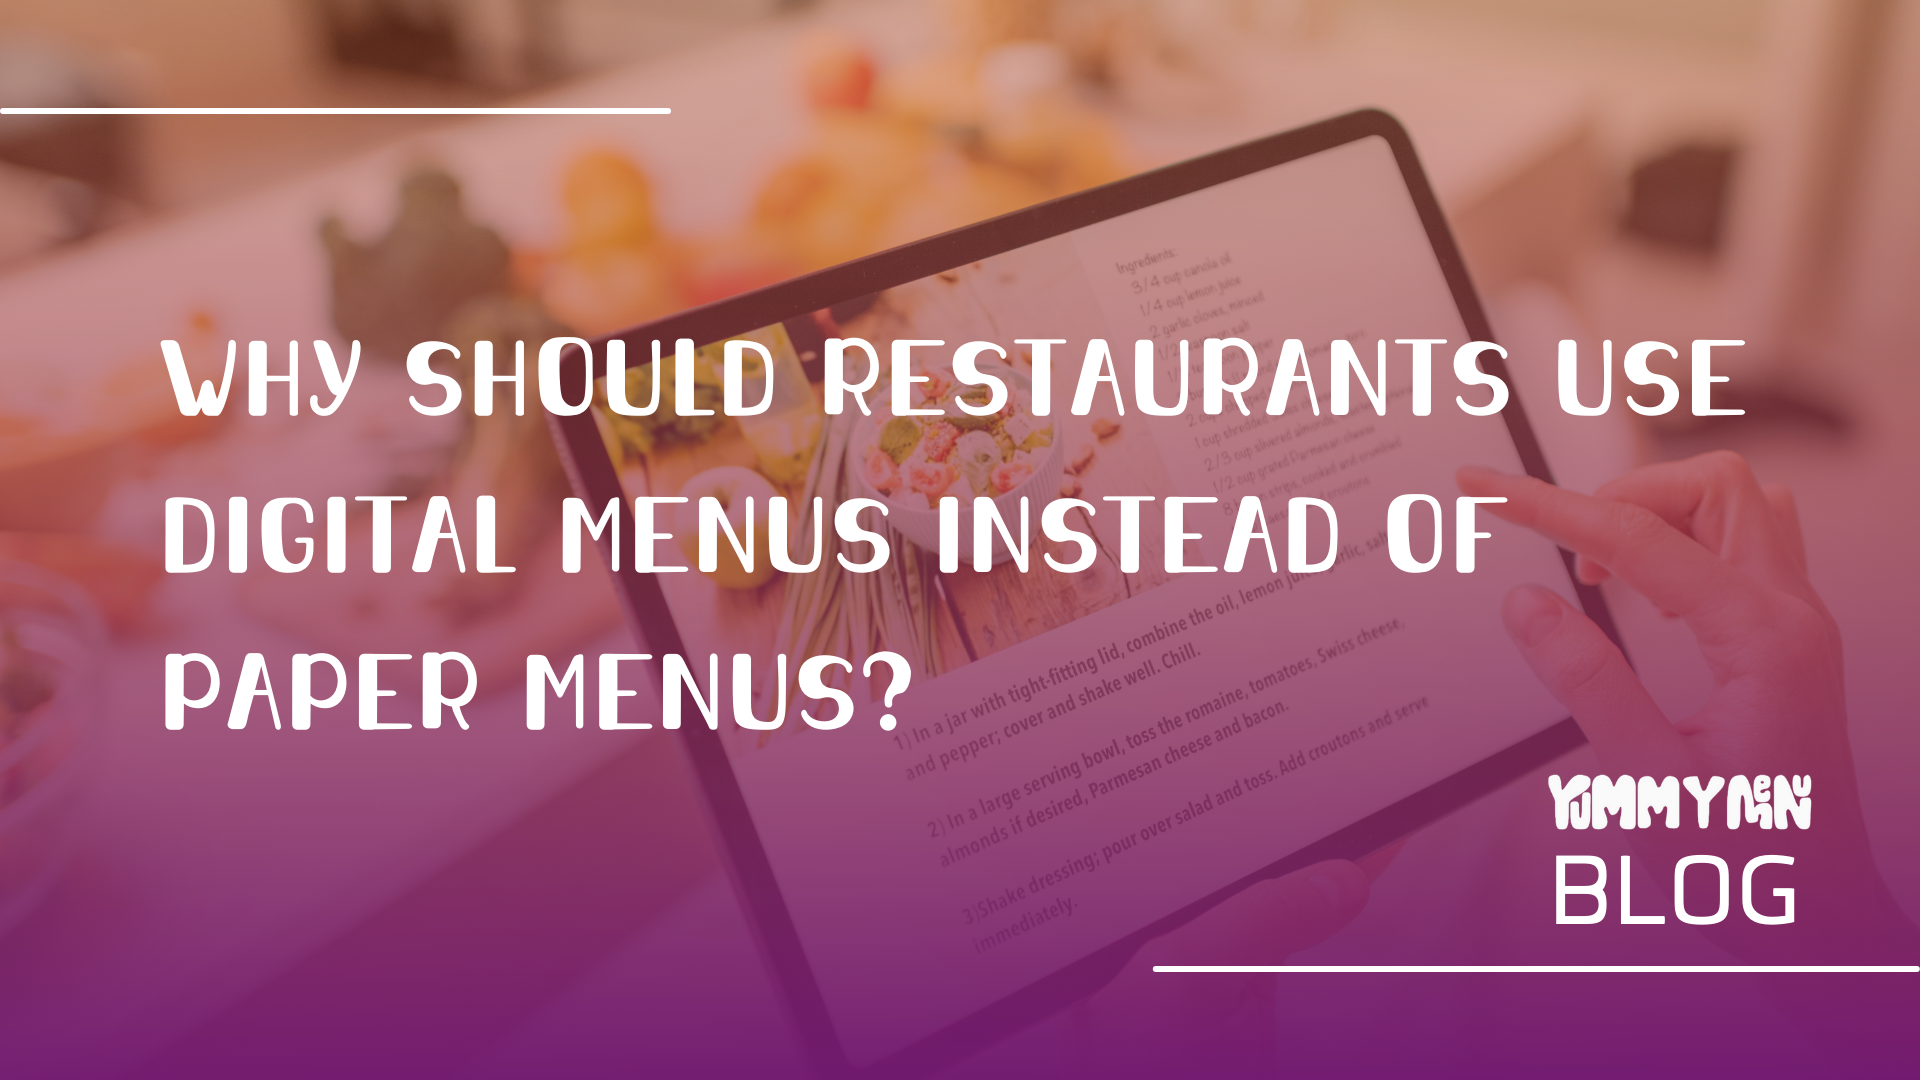 Why Should Restaurants Use Digital Menus Instead of Paper Menus?